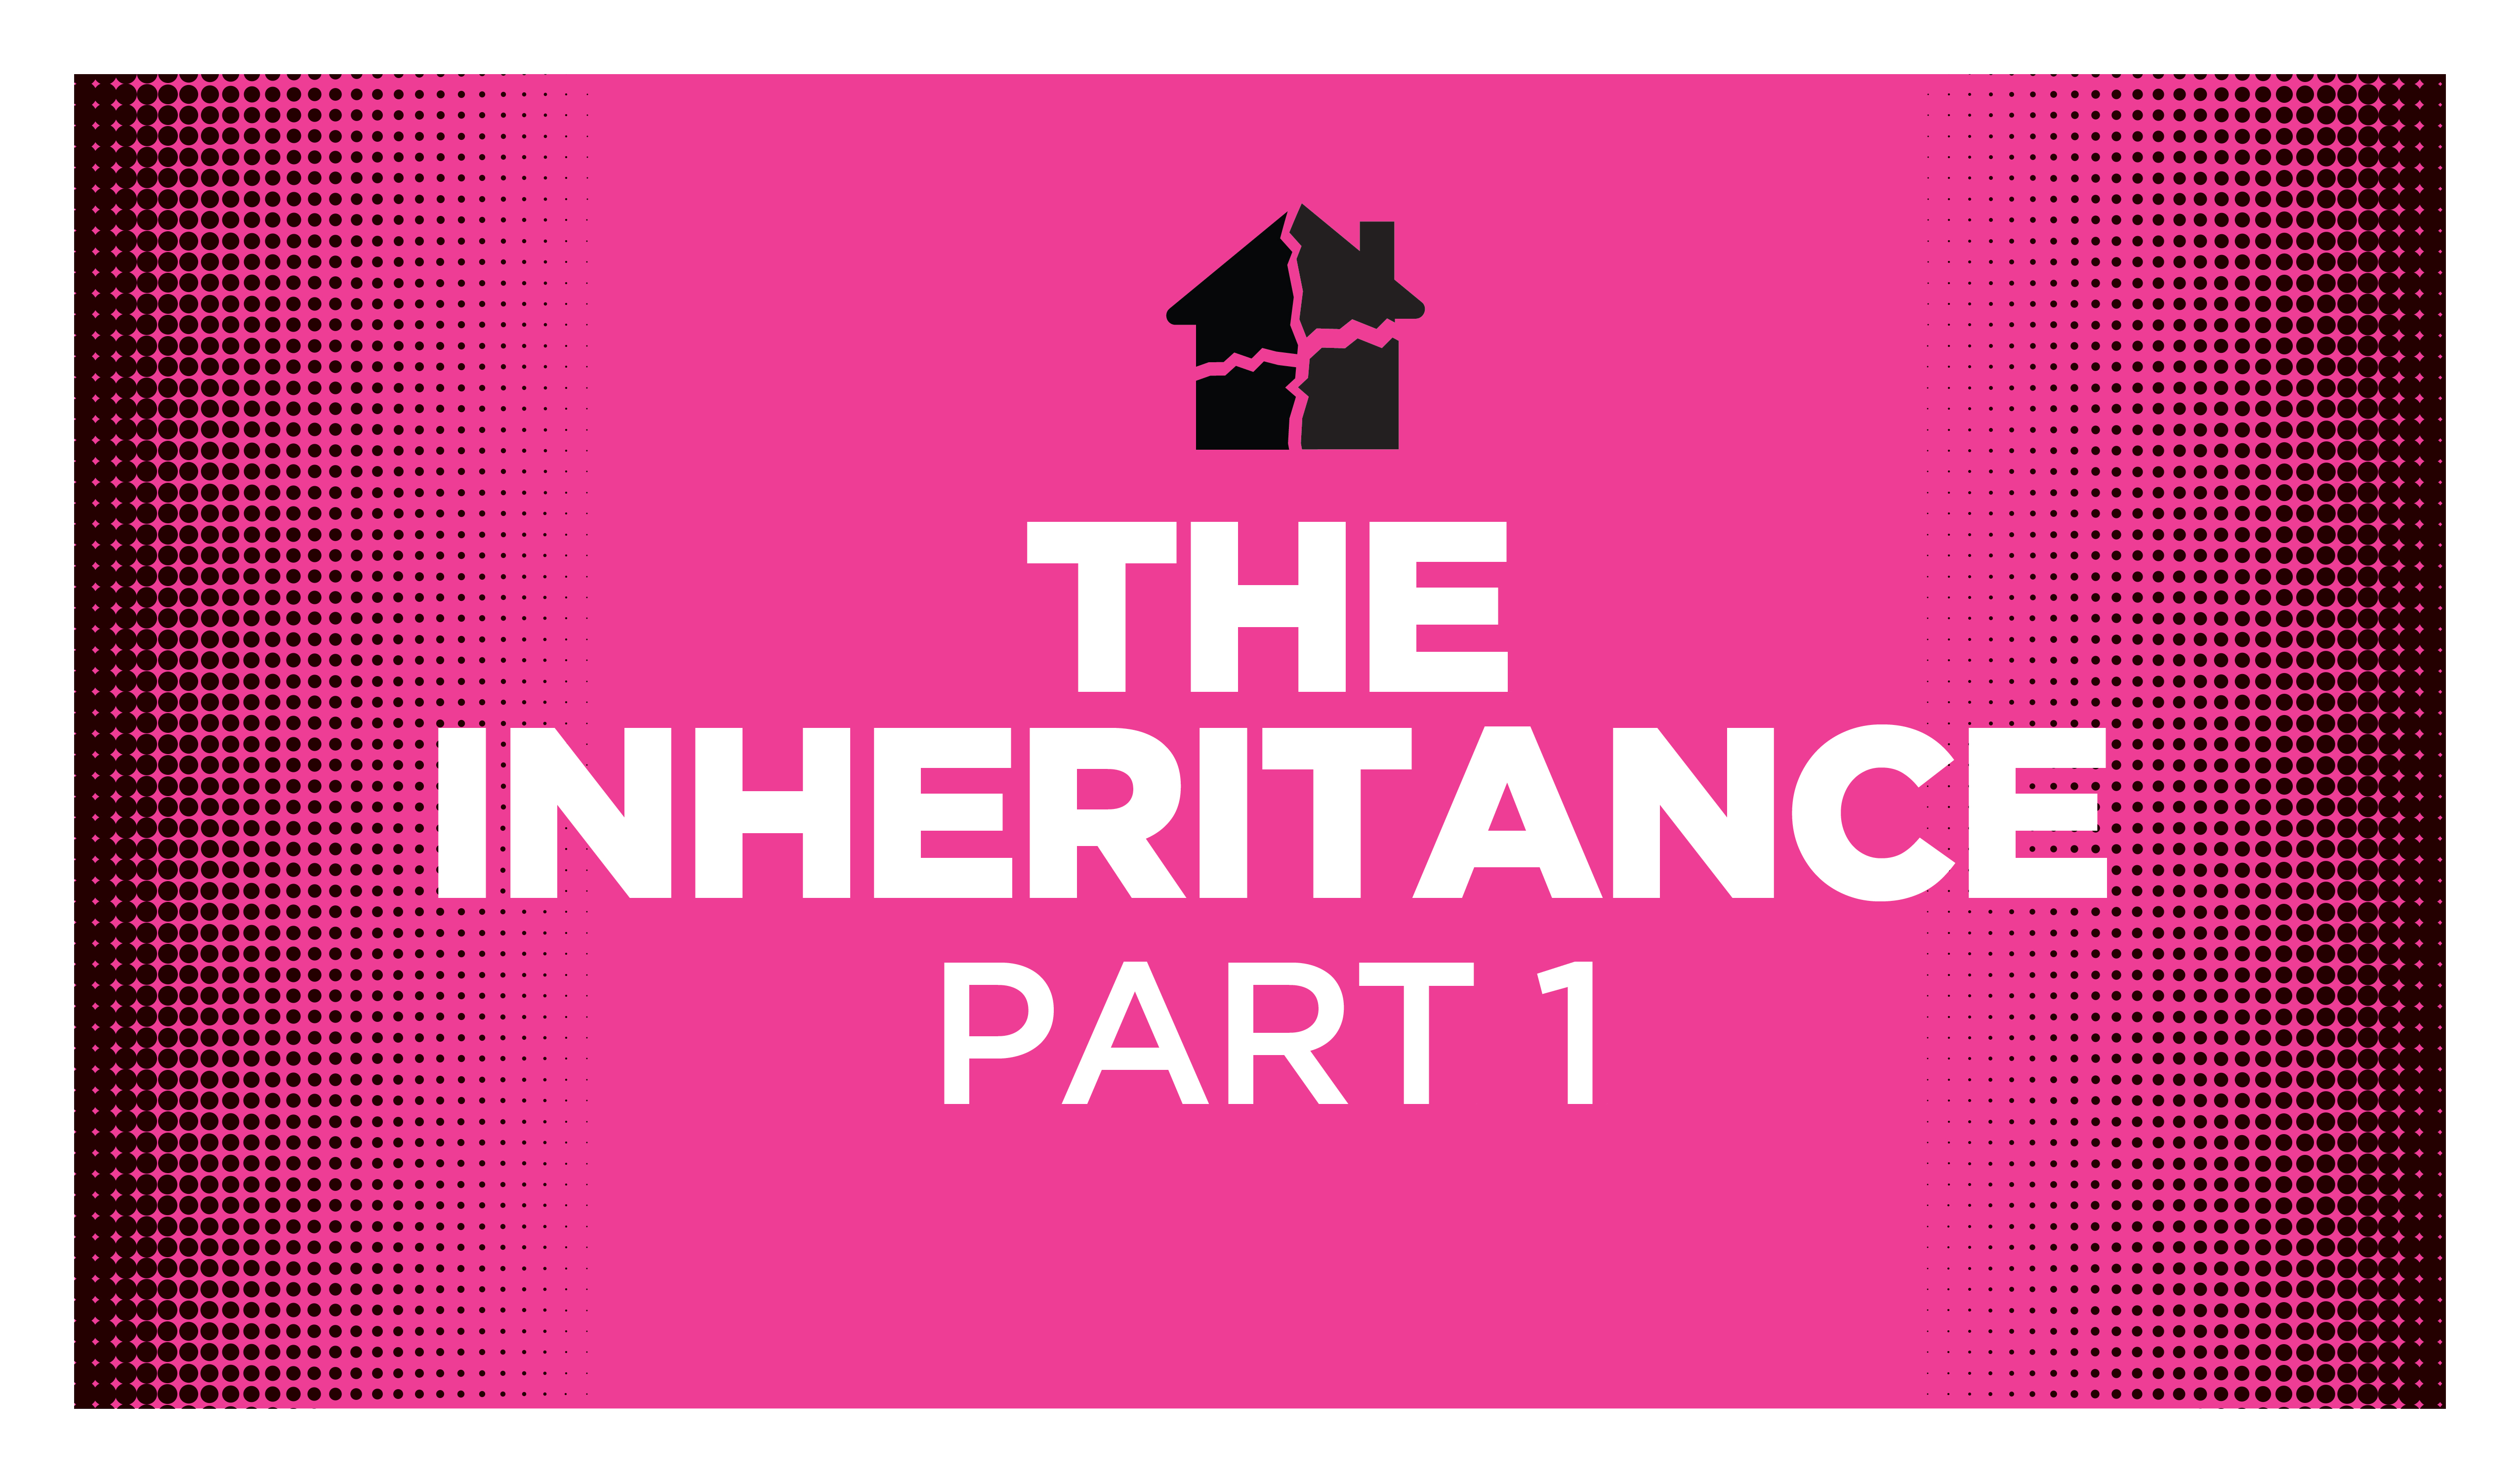 The Inheritance, Part 1 by Zach Theatre